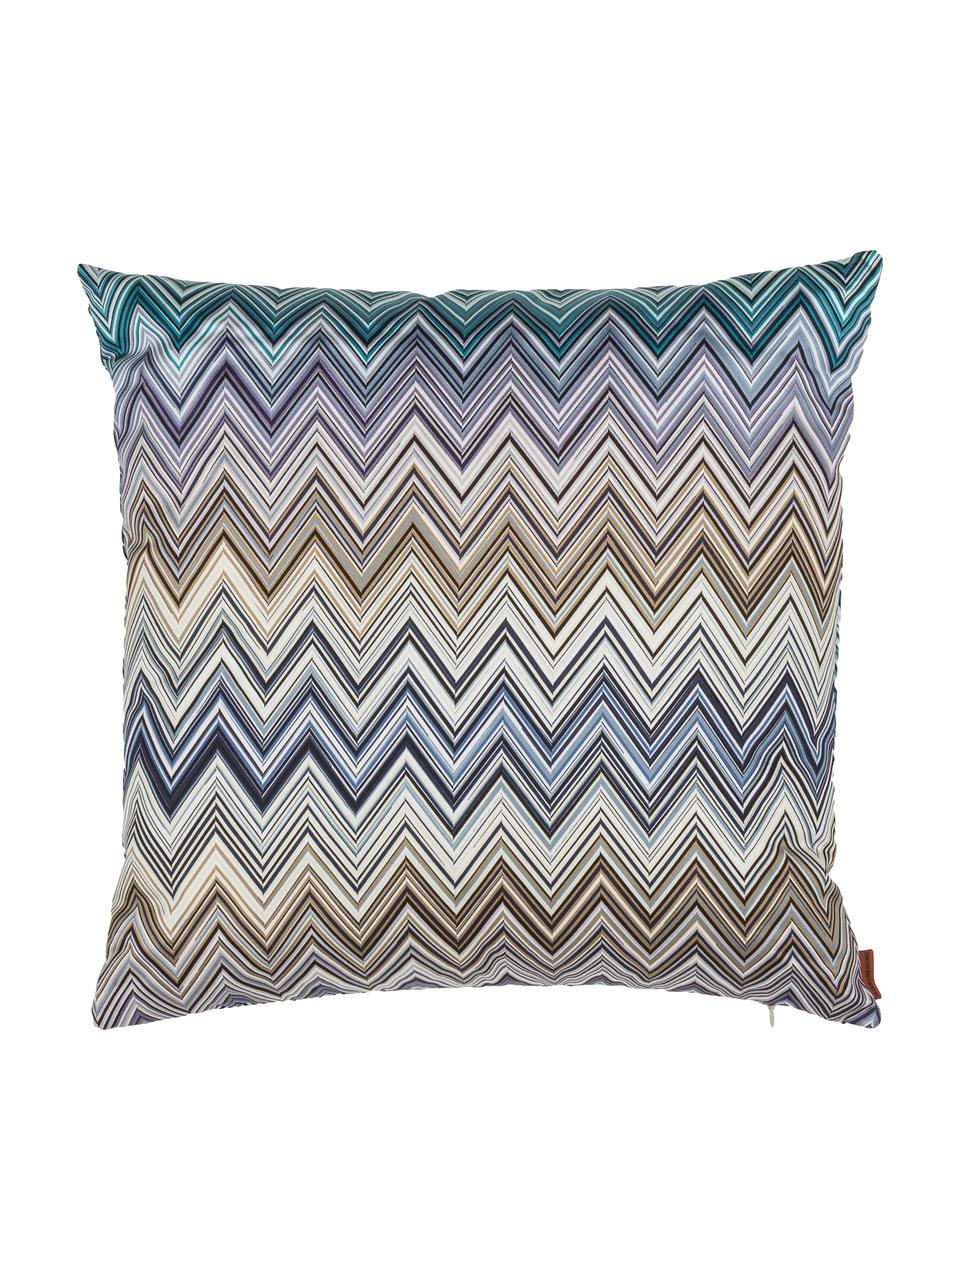 Katoensatijnen design kussen Jarris met zigzag patroon, met vulling, Lila, turquoise, beige, 40 x 40 cm